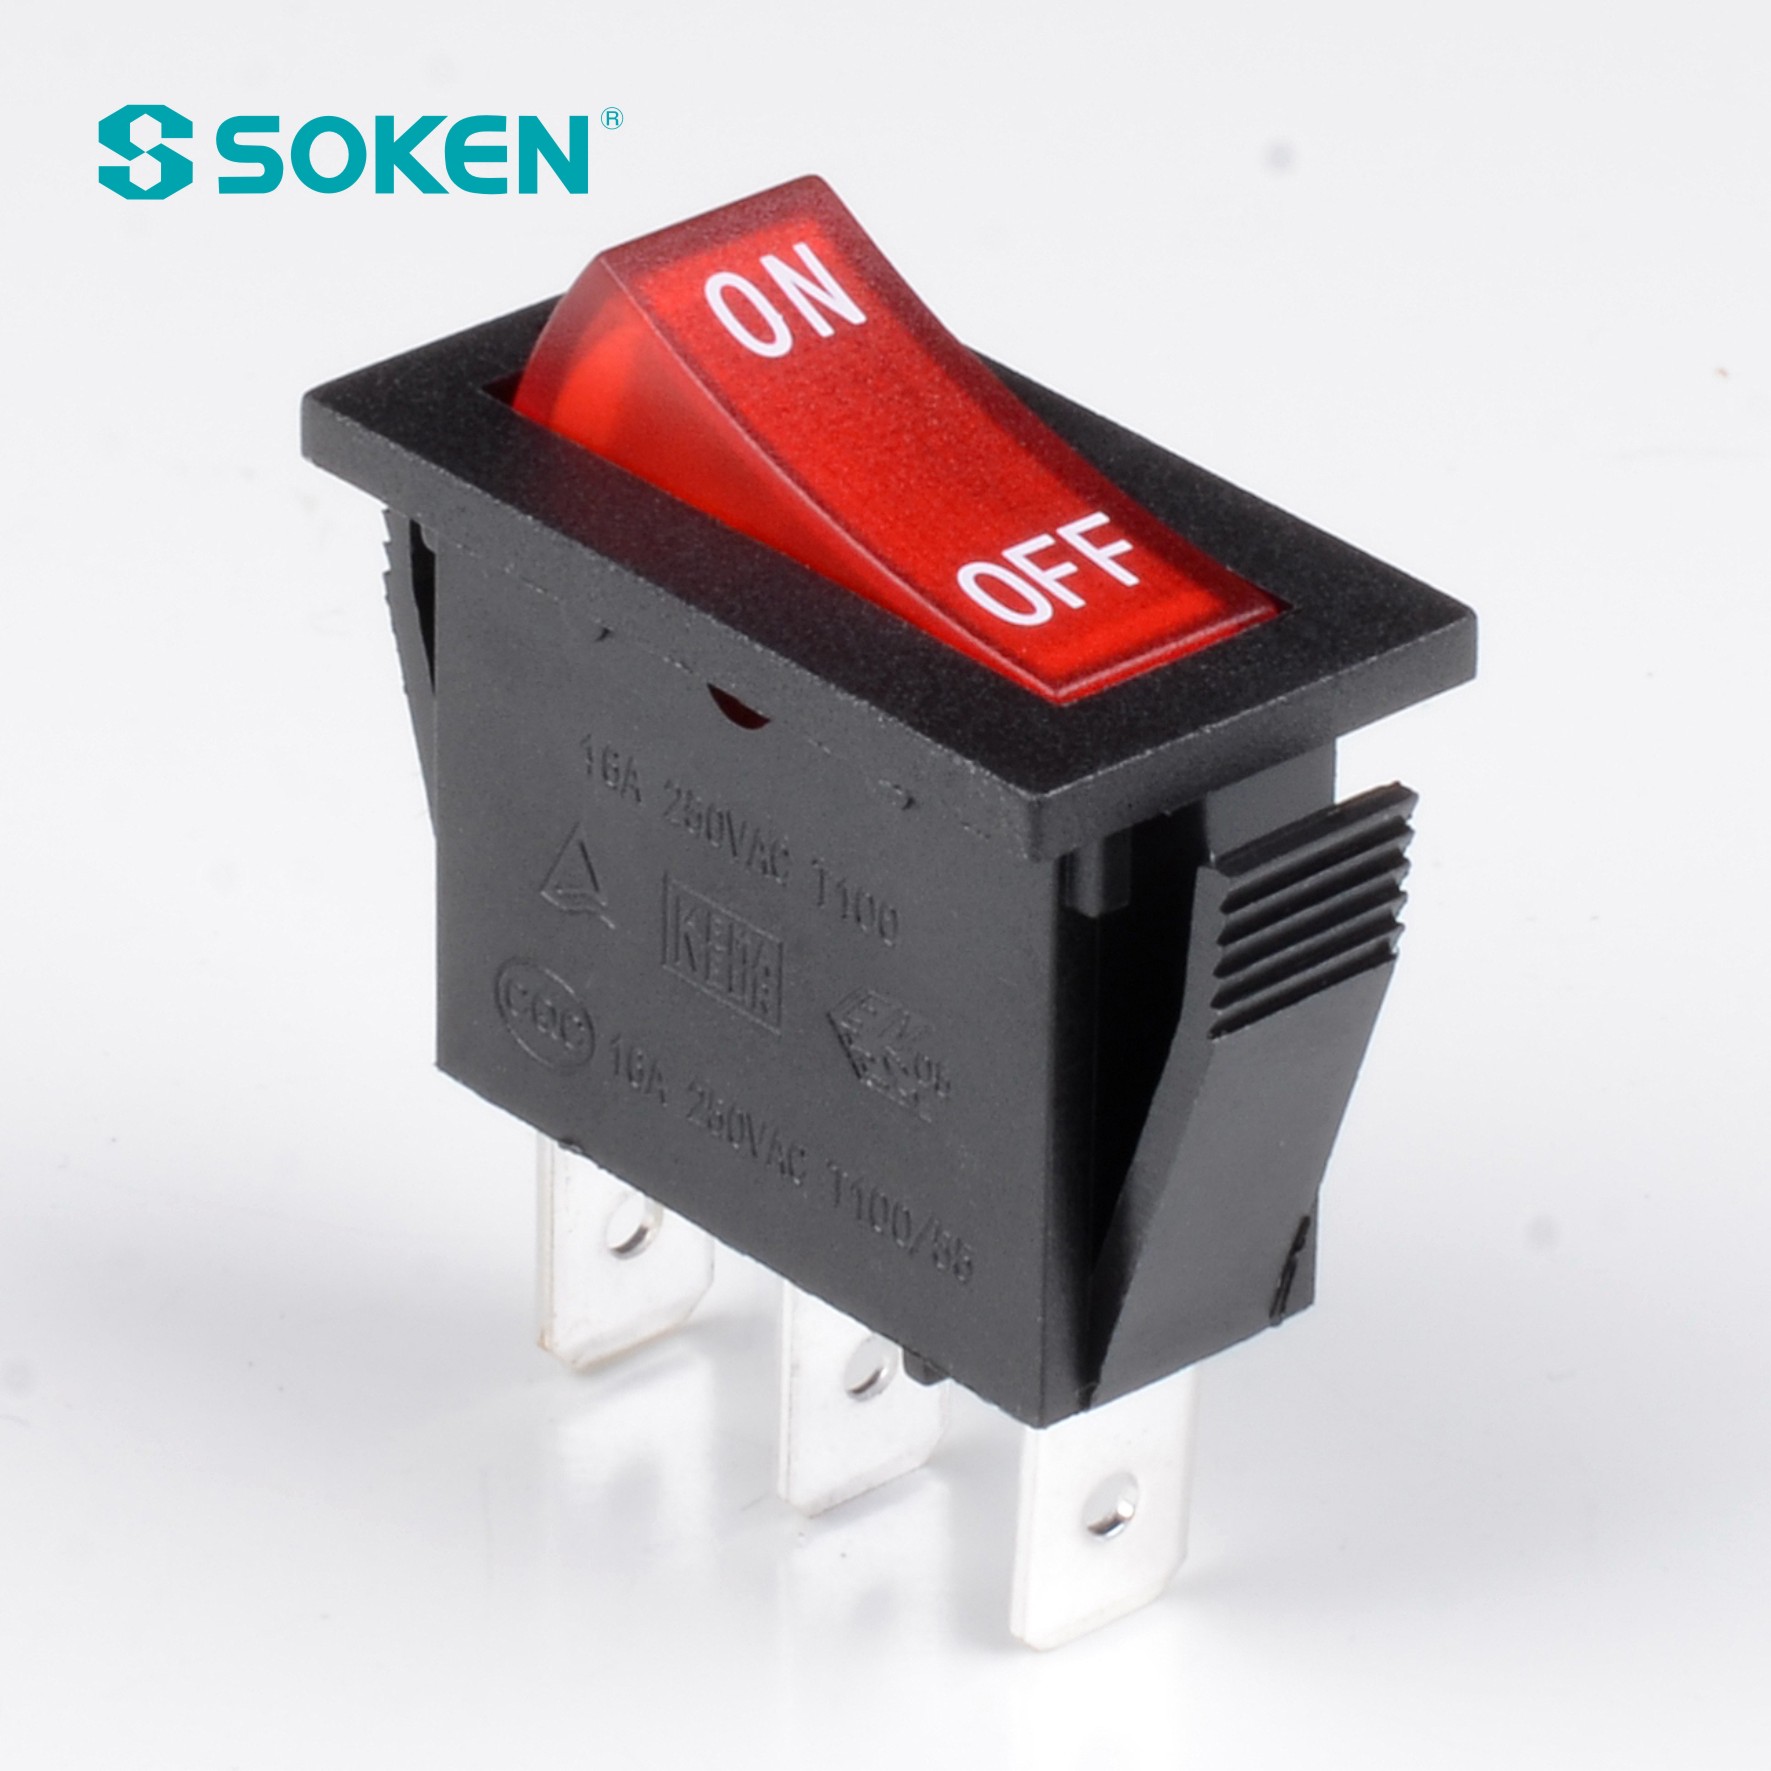 Soken Rk1-16 1X2 միացված է Rocker Switch-ում